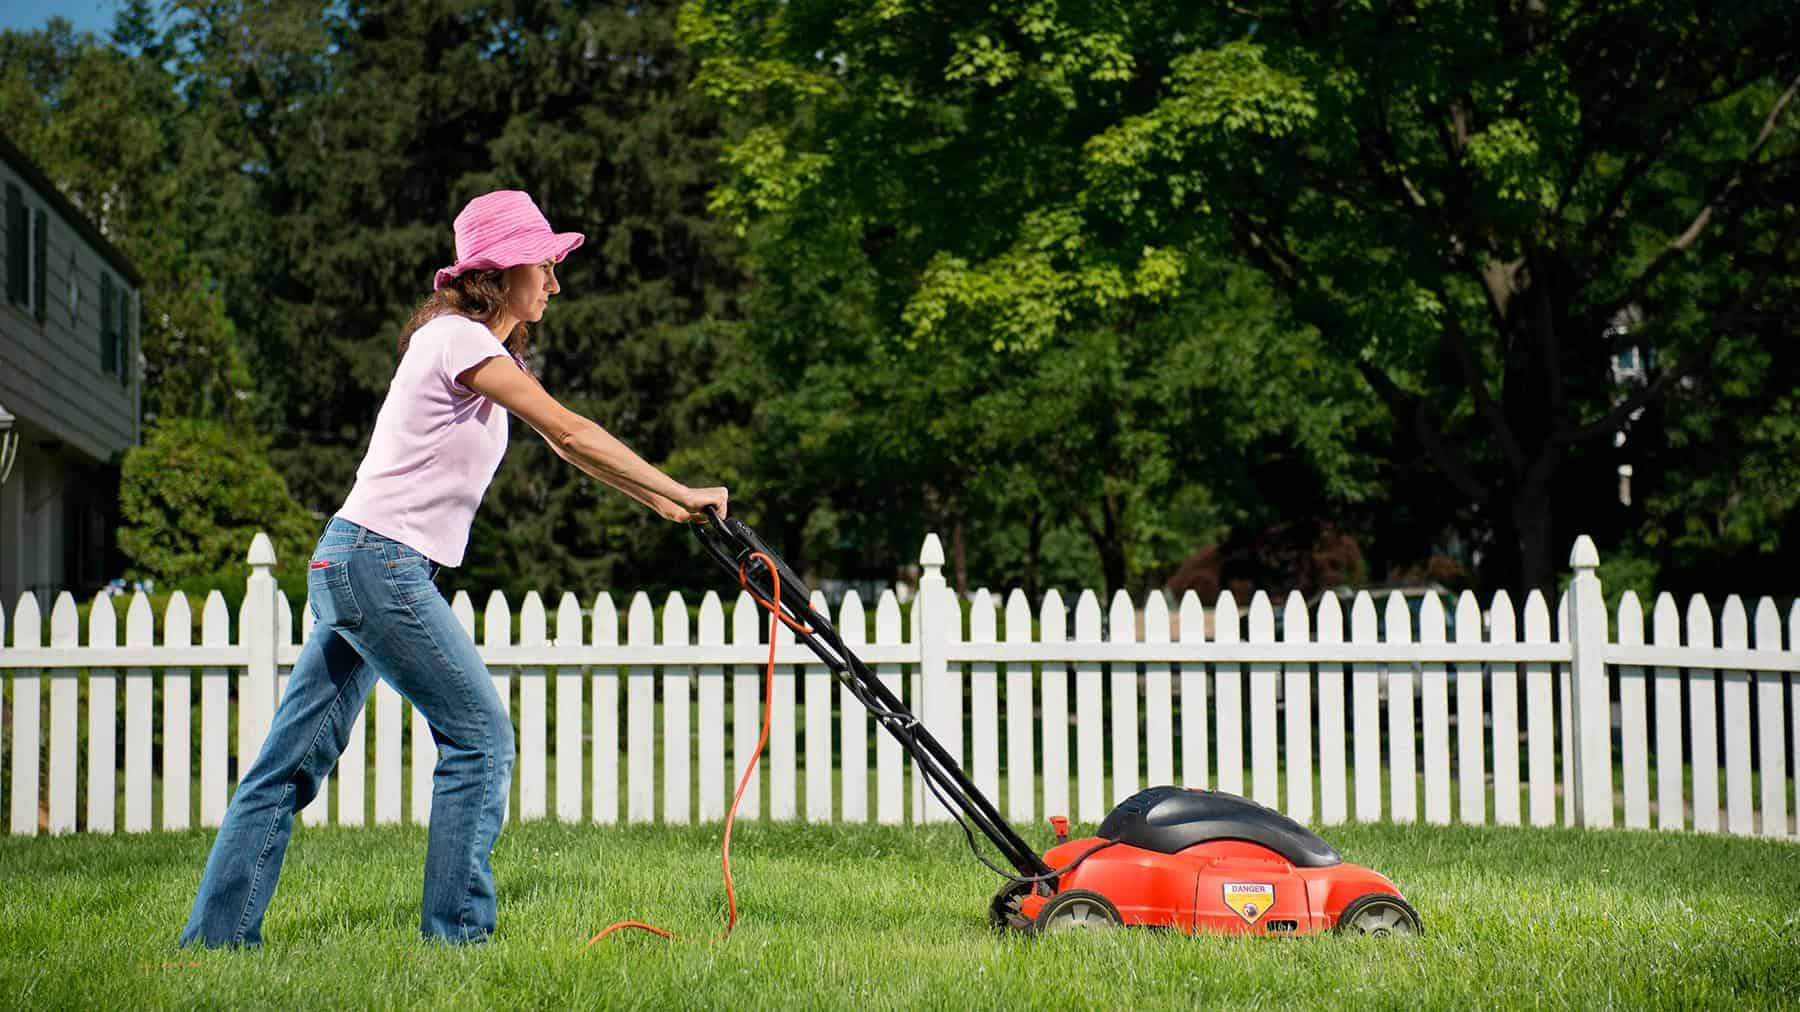 best lawn mower blade sharpener